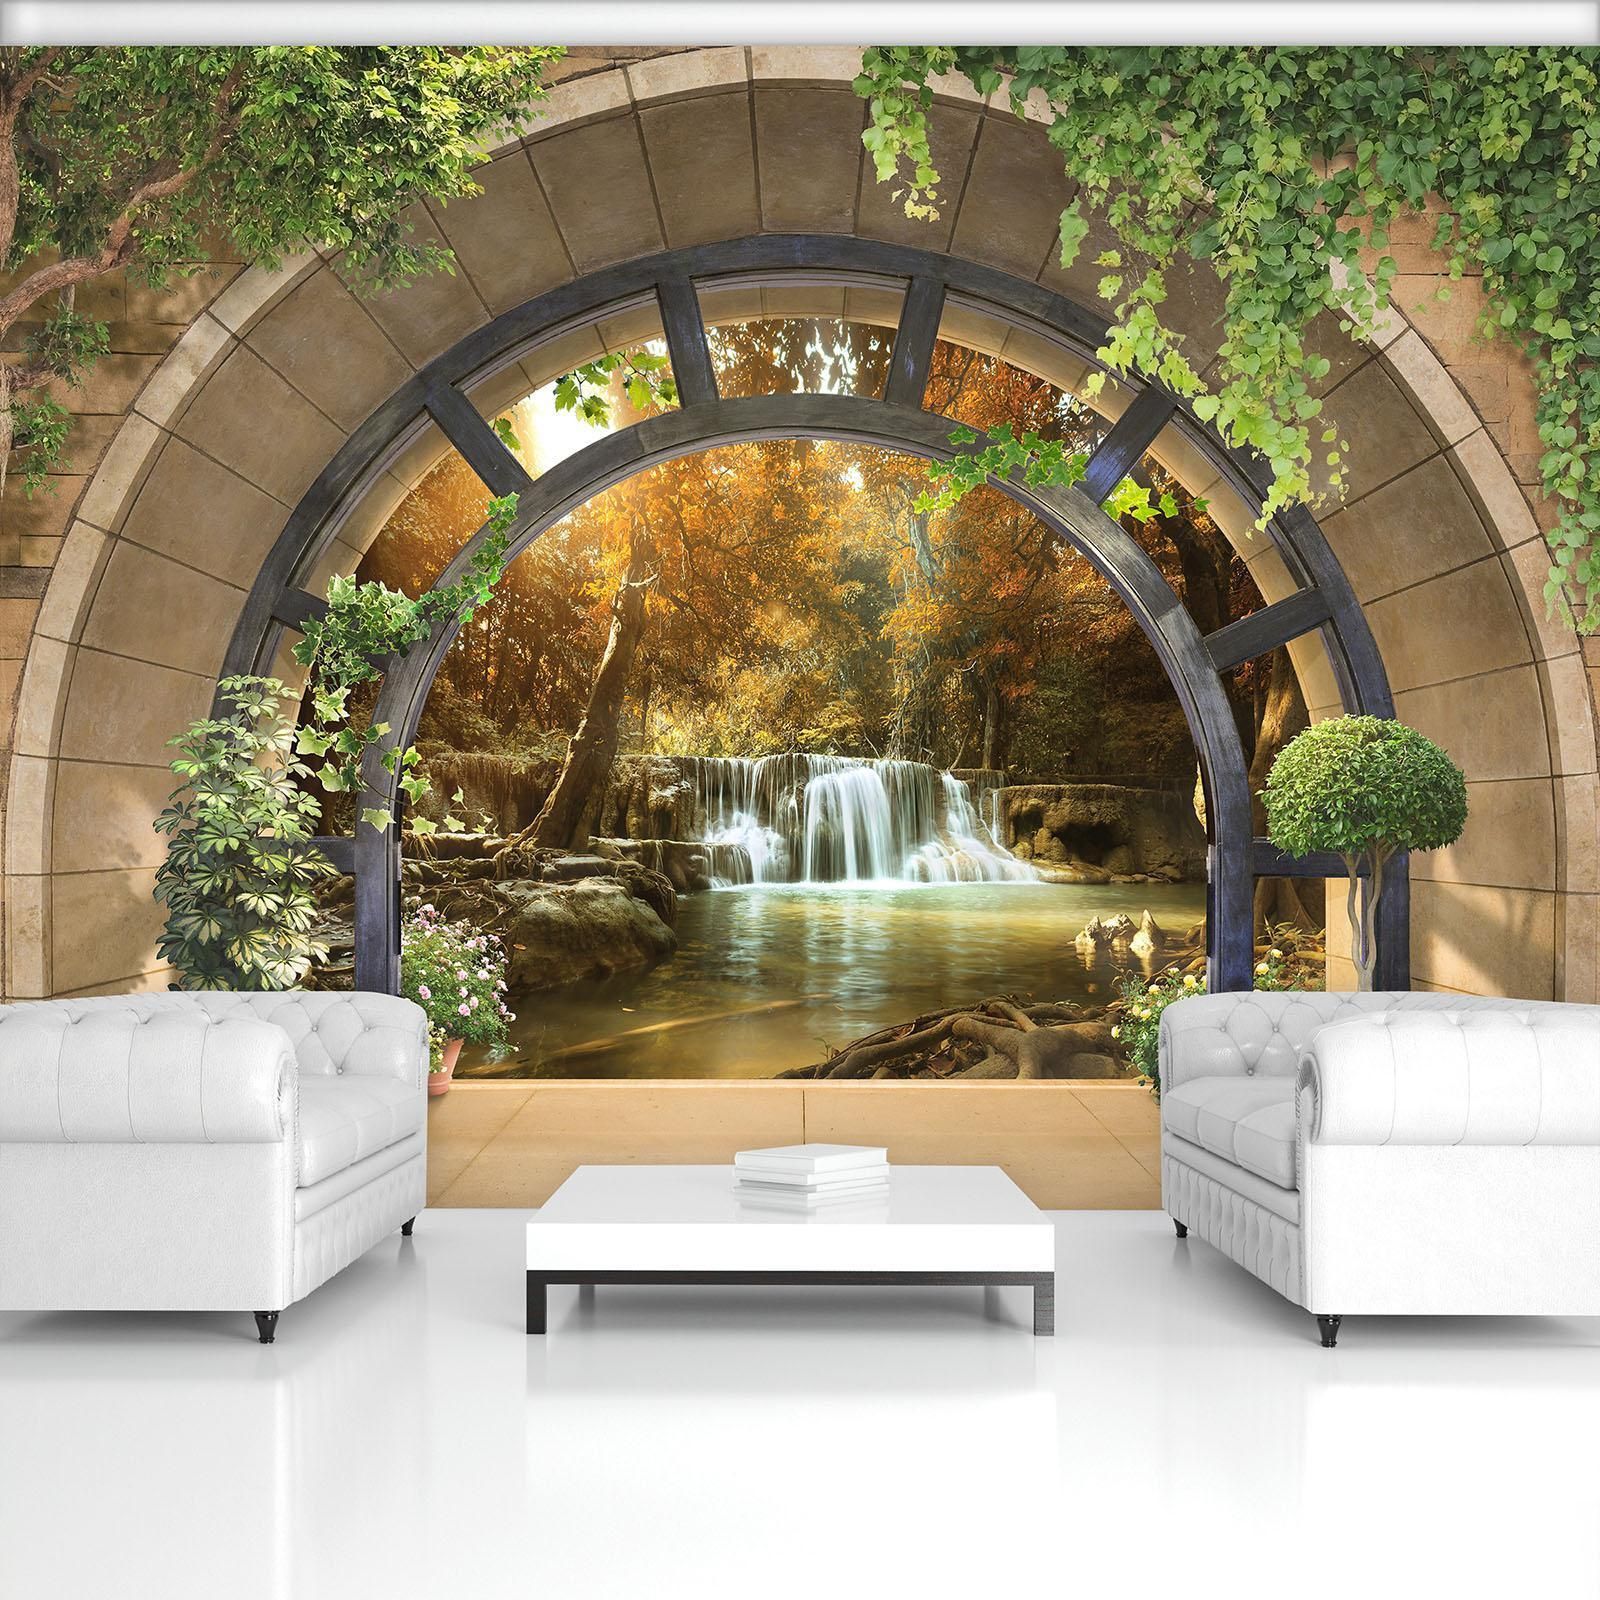 wallpaper 3d effekt,mural,natural landscape,wall,furniture,arch